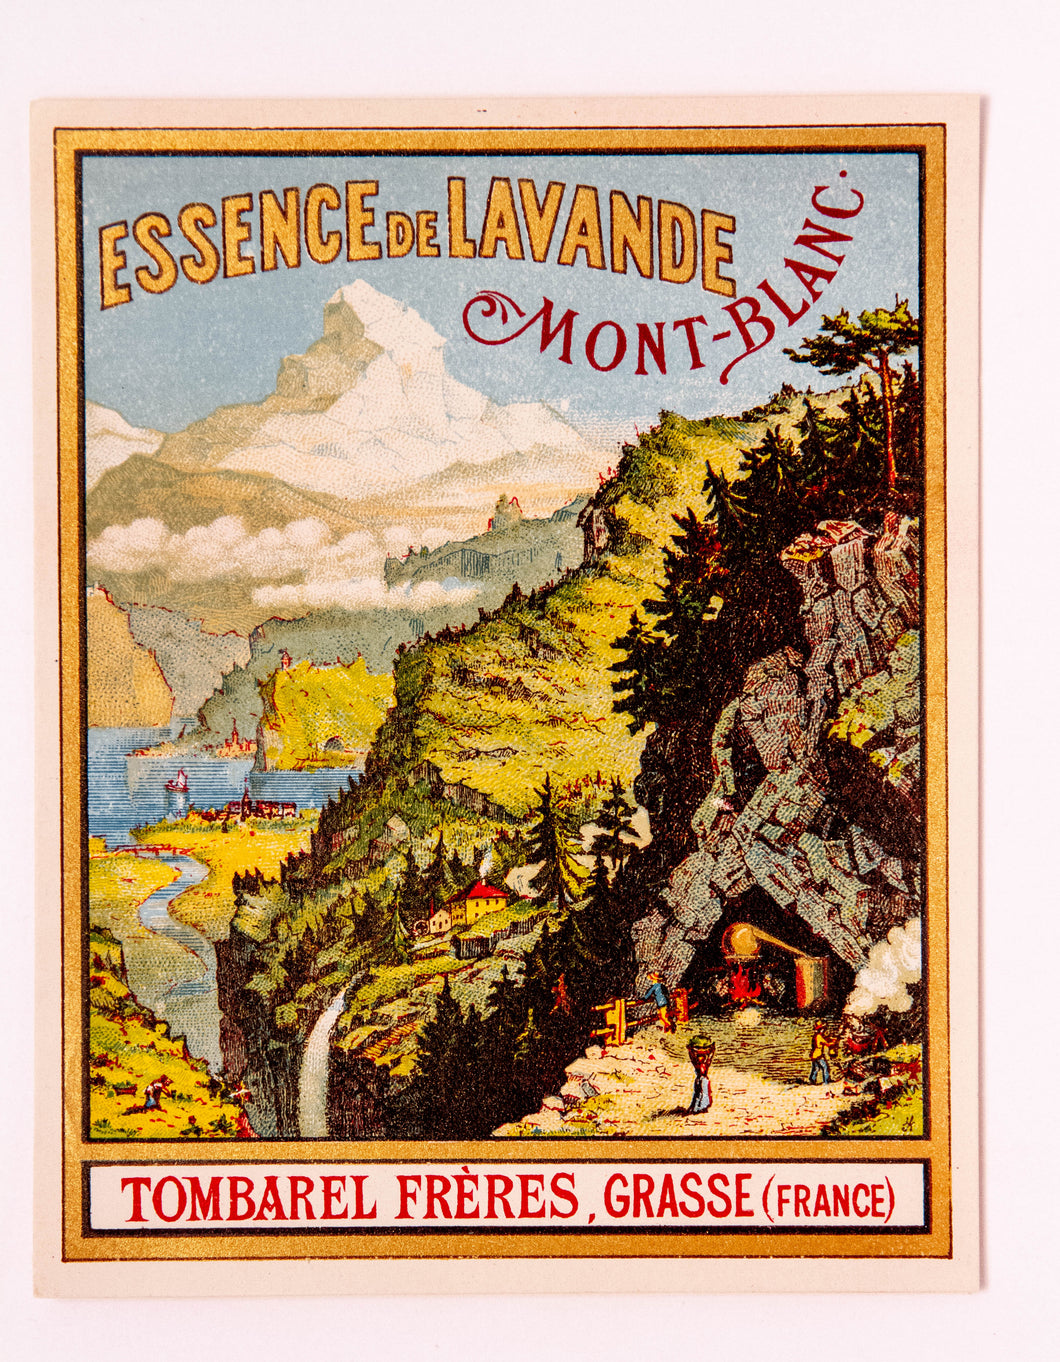 Vintage ESSENCE DE LAVANDE, MONT-BLANC, TOMBAREL FRERES, GRASSE, Antique Perfume Label - TheBoxSF